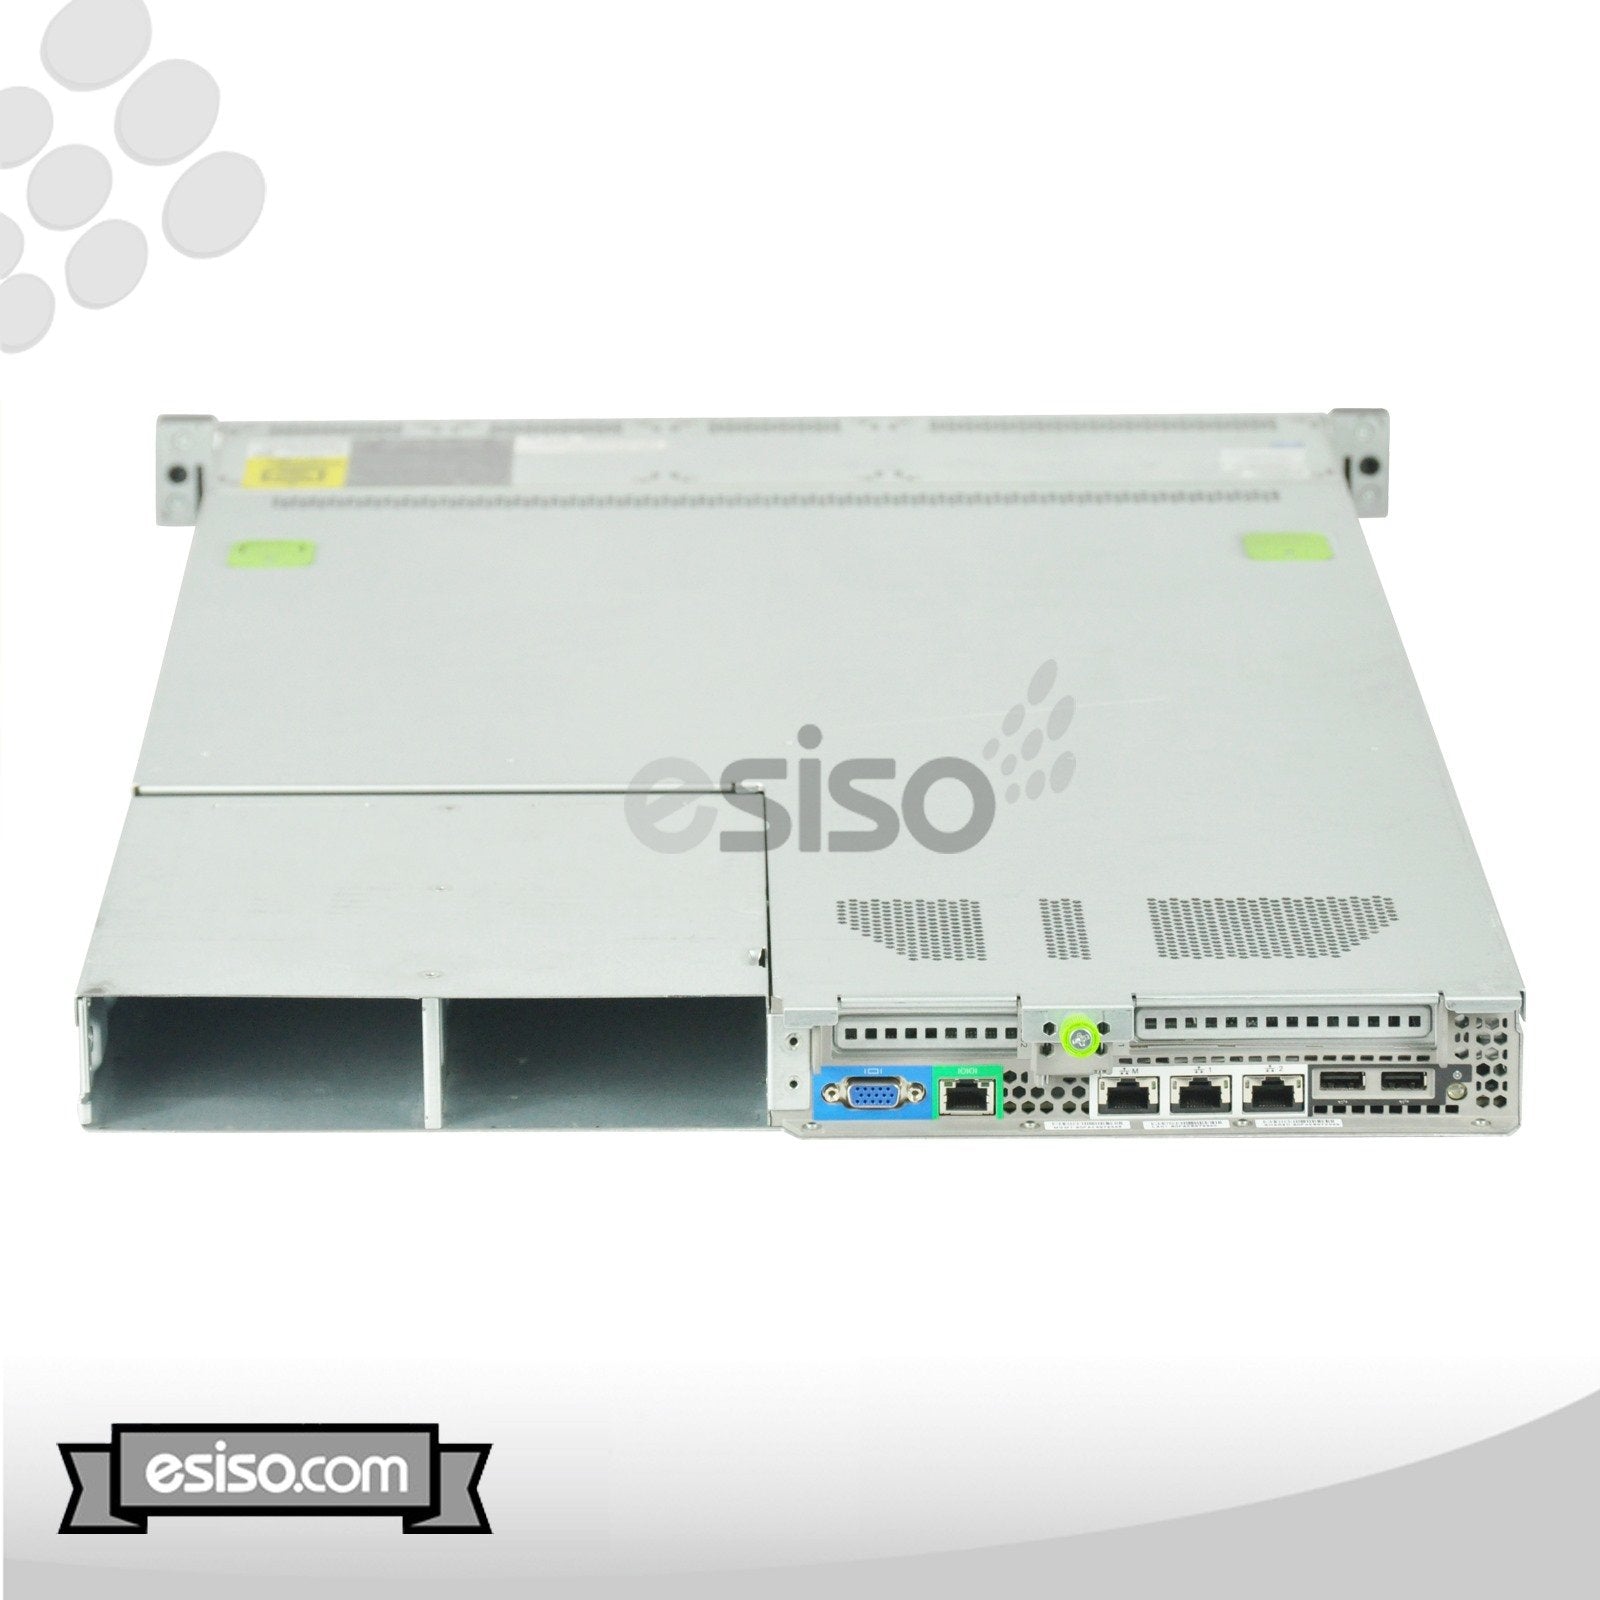 CISCO UCS C220 M3 8SFF SERVER 2x SIX CORE E5-2640 2.50GHz 128GB 4x 600GB 10K SAS